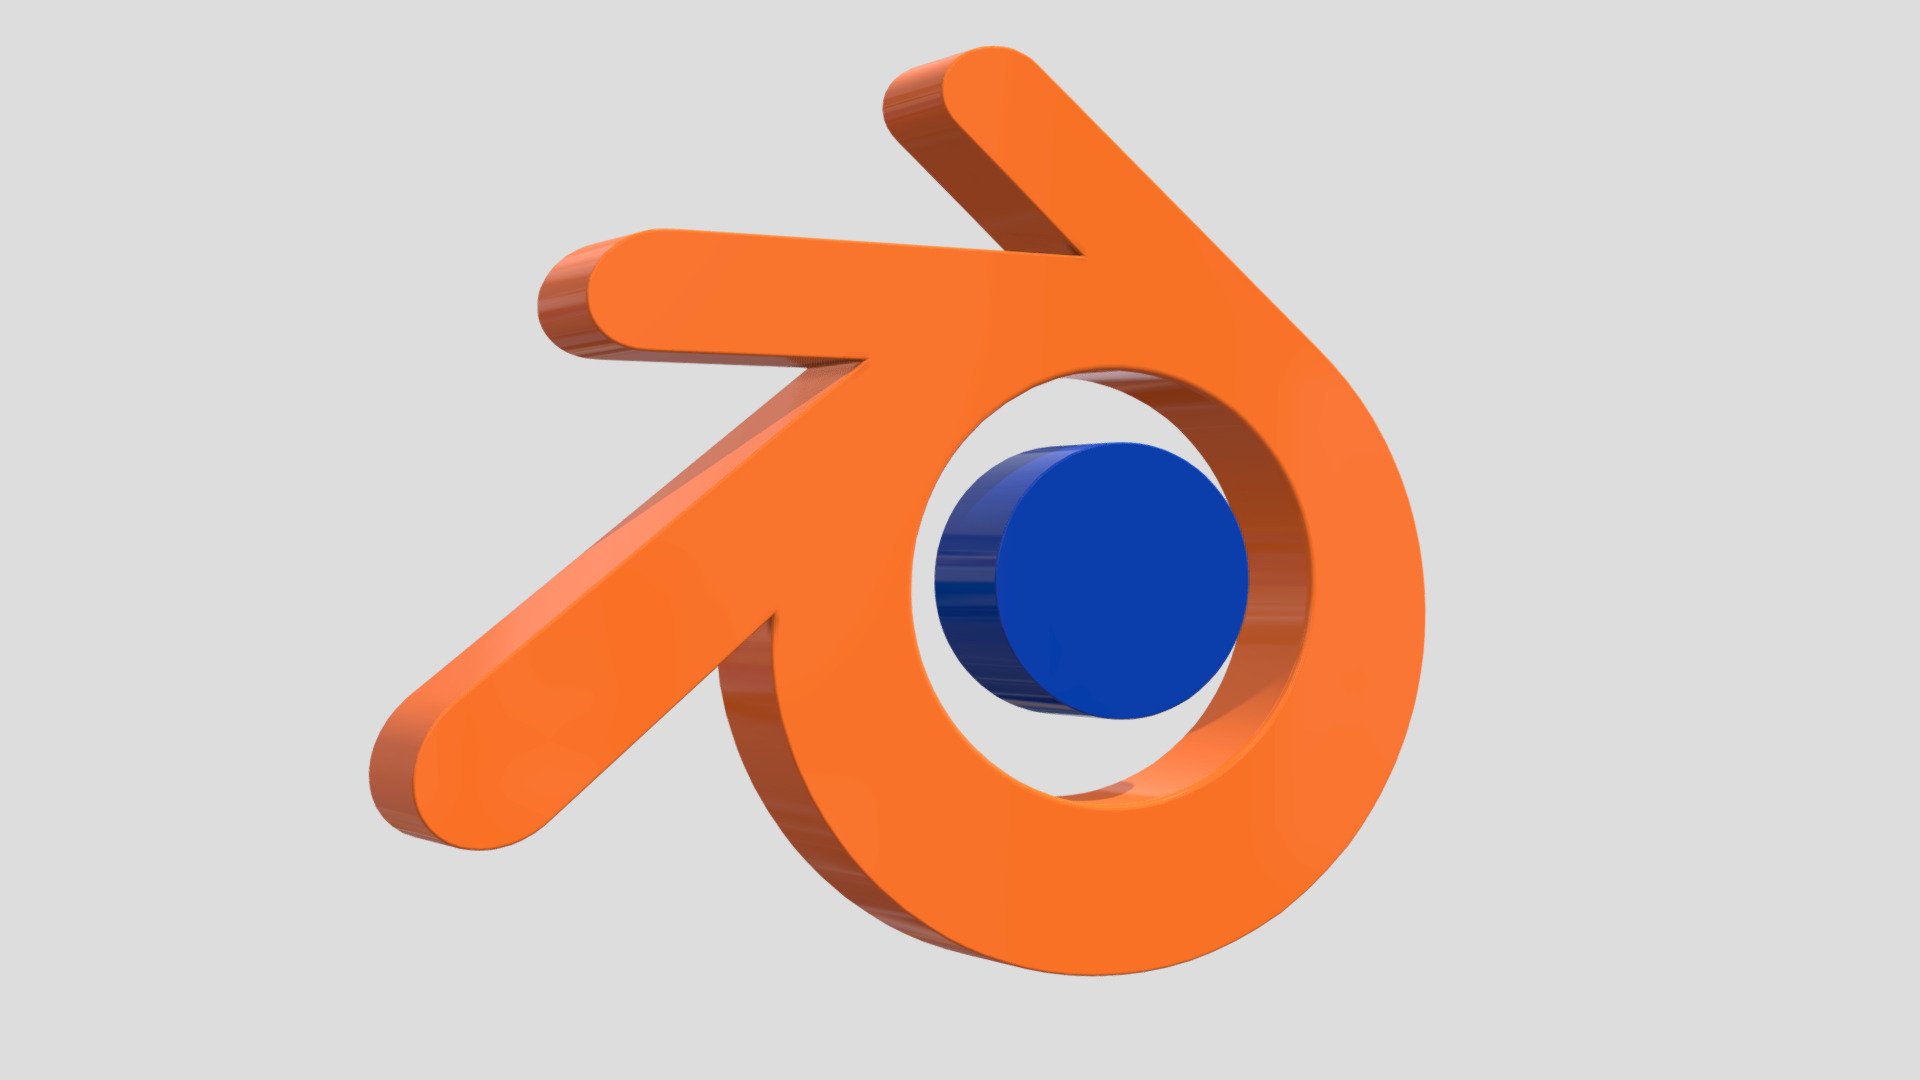 blender 3d logo